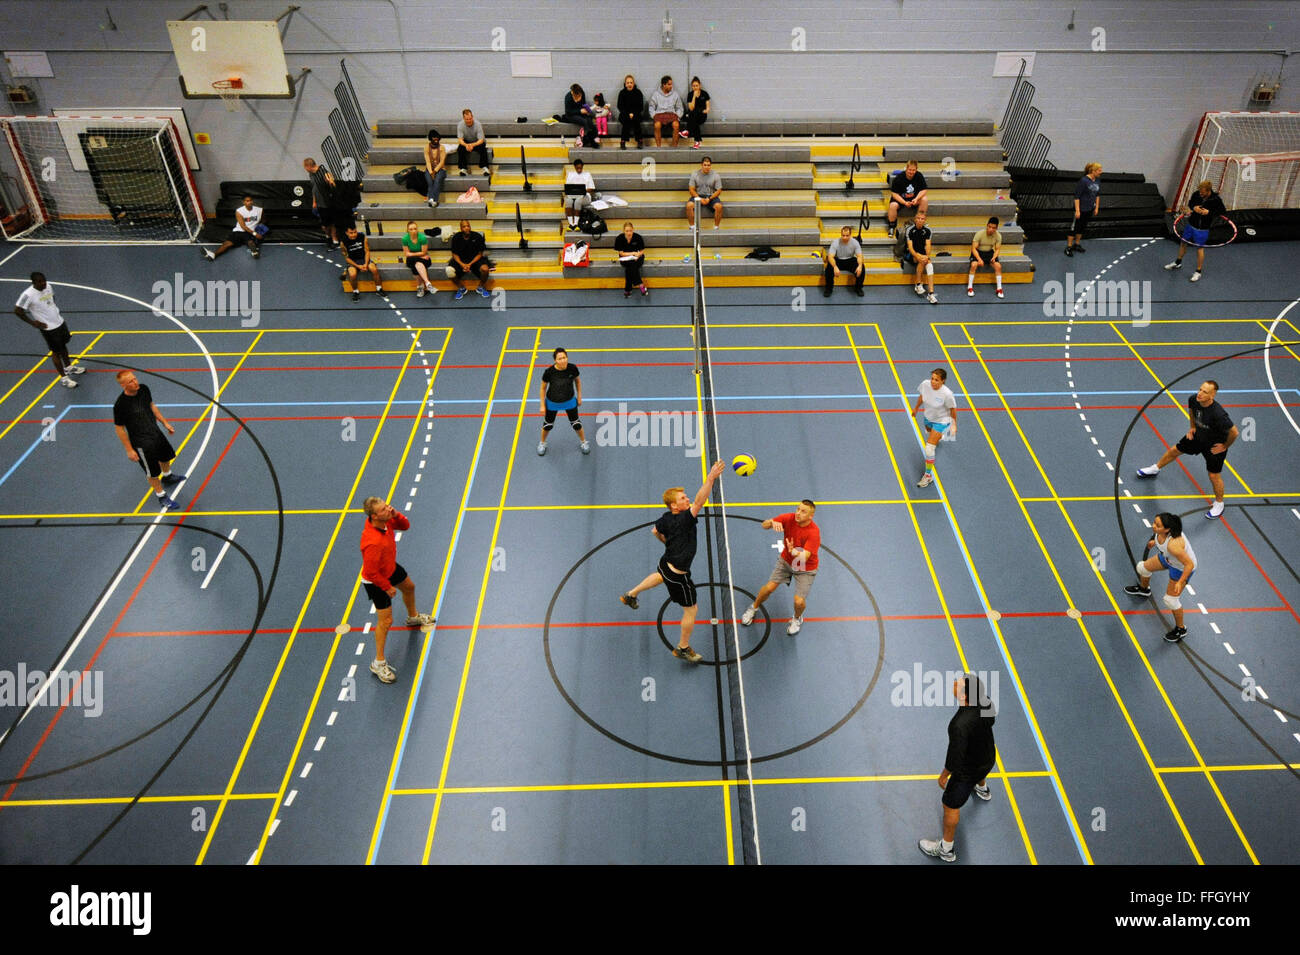 Avieri e appaltatori danese di partecipare a un torneo di pallavolo presso la Thule AB palestra. Foto Stock